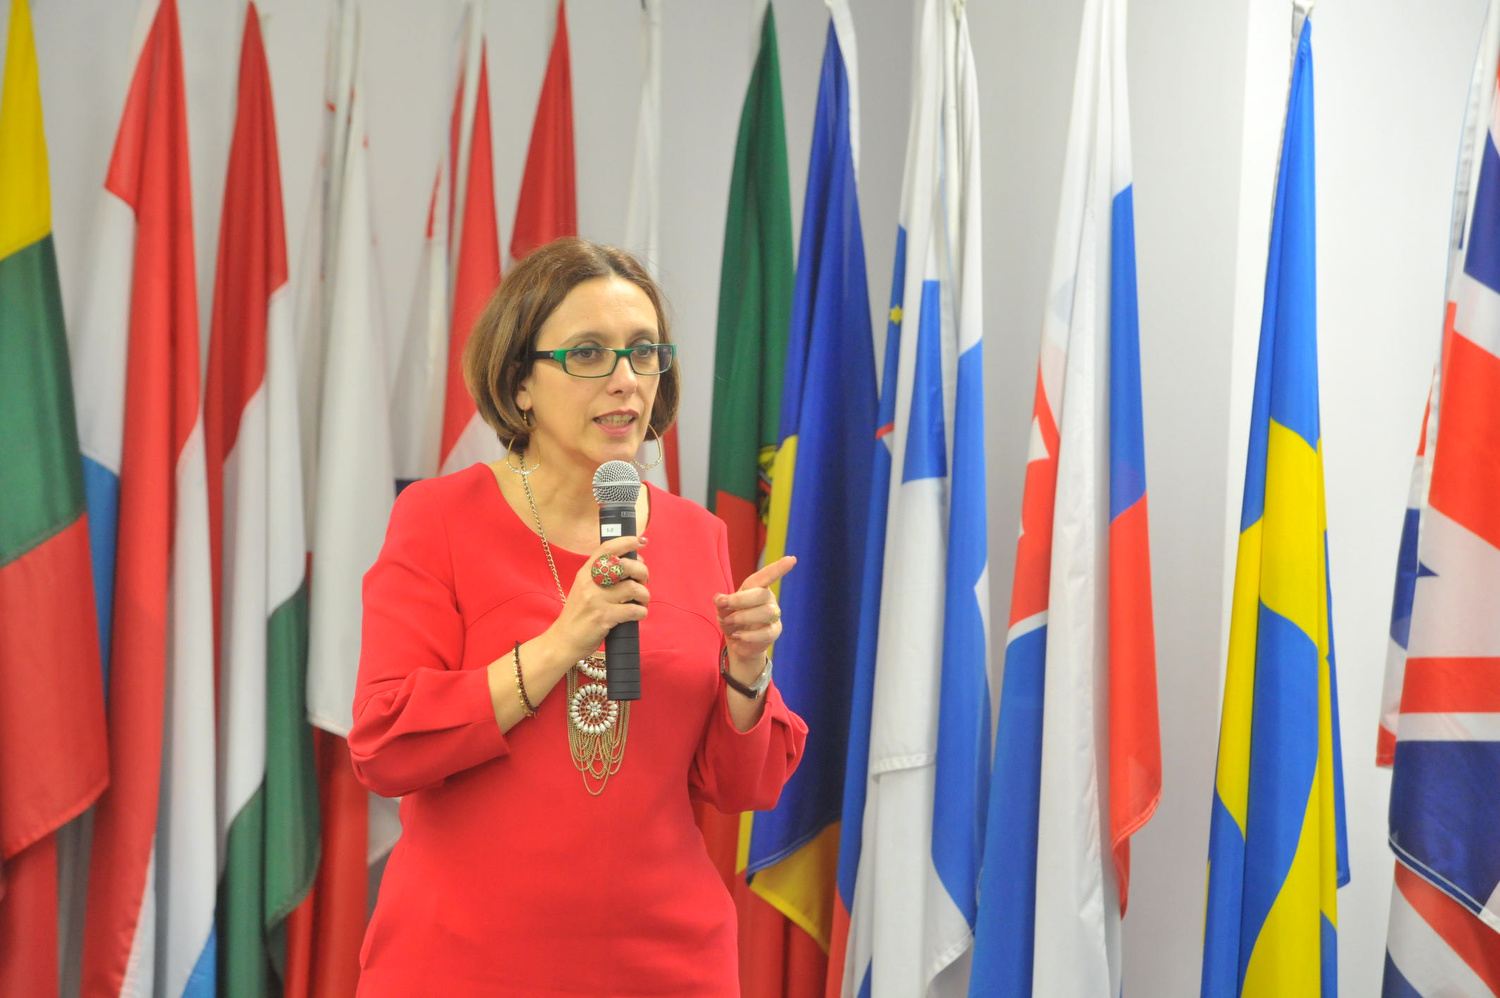 Elisabetta Capannelli, manager pe ţară la Banca Mondială în România şi Ungaria